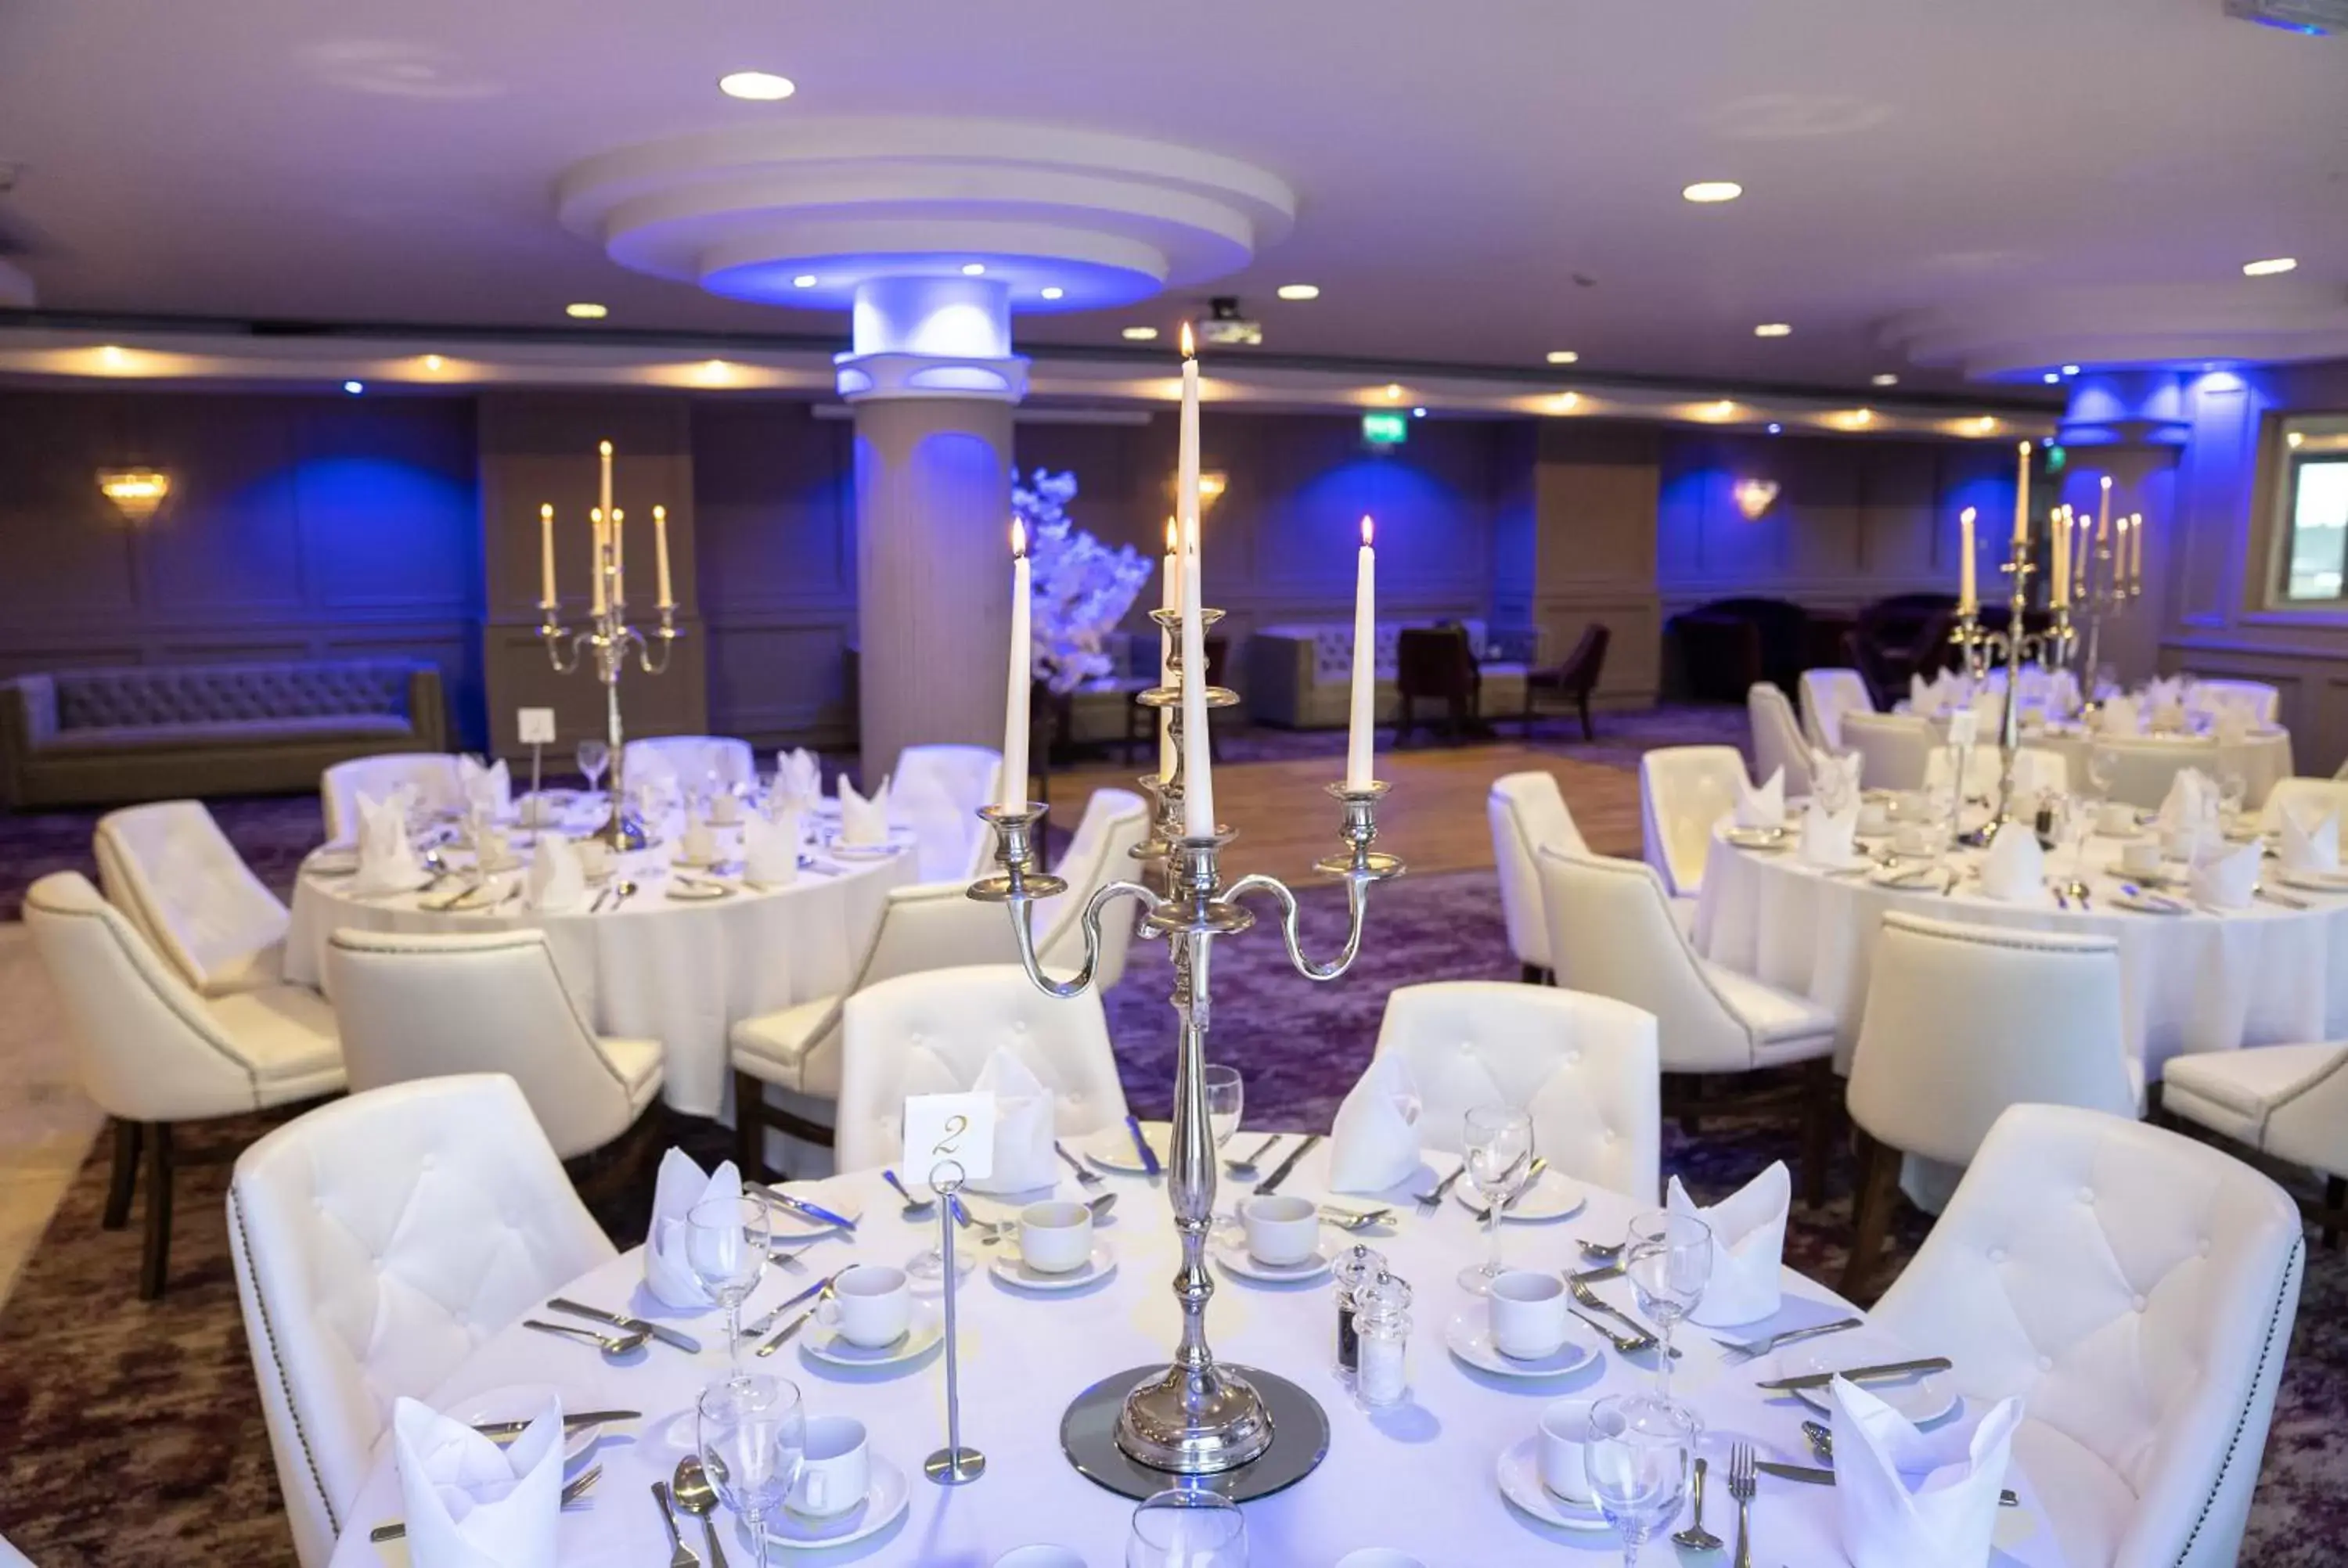 Banquet/Function facilities, Banquet Facilities in Seagoe Hotel